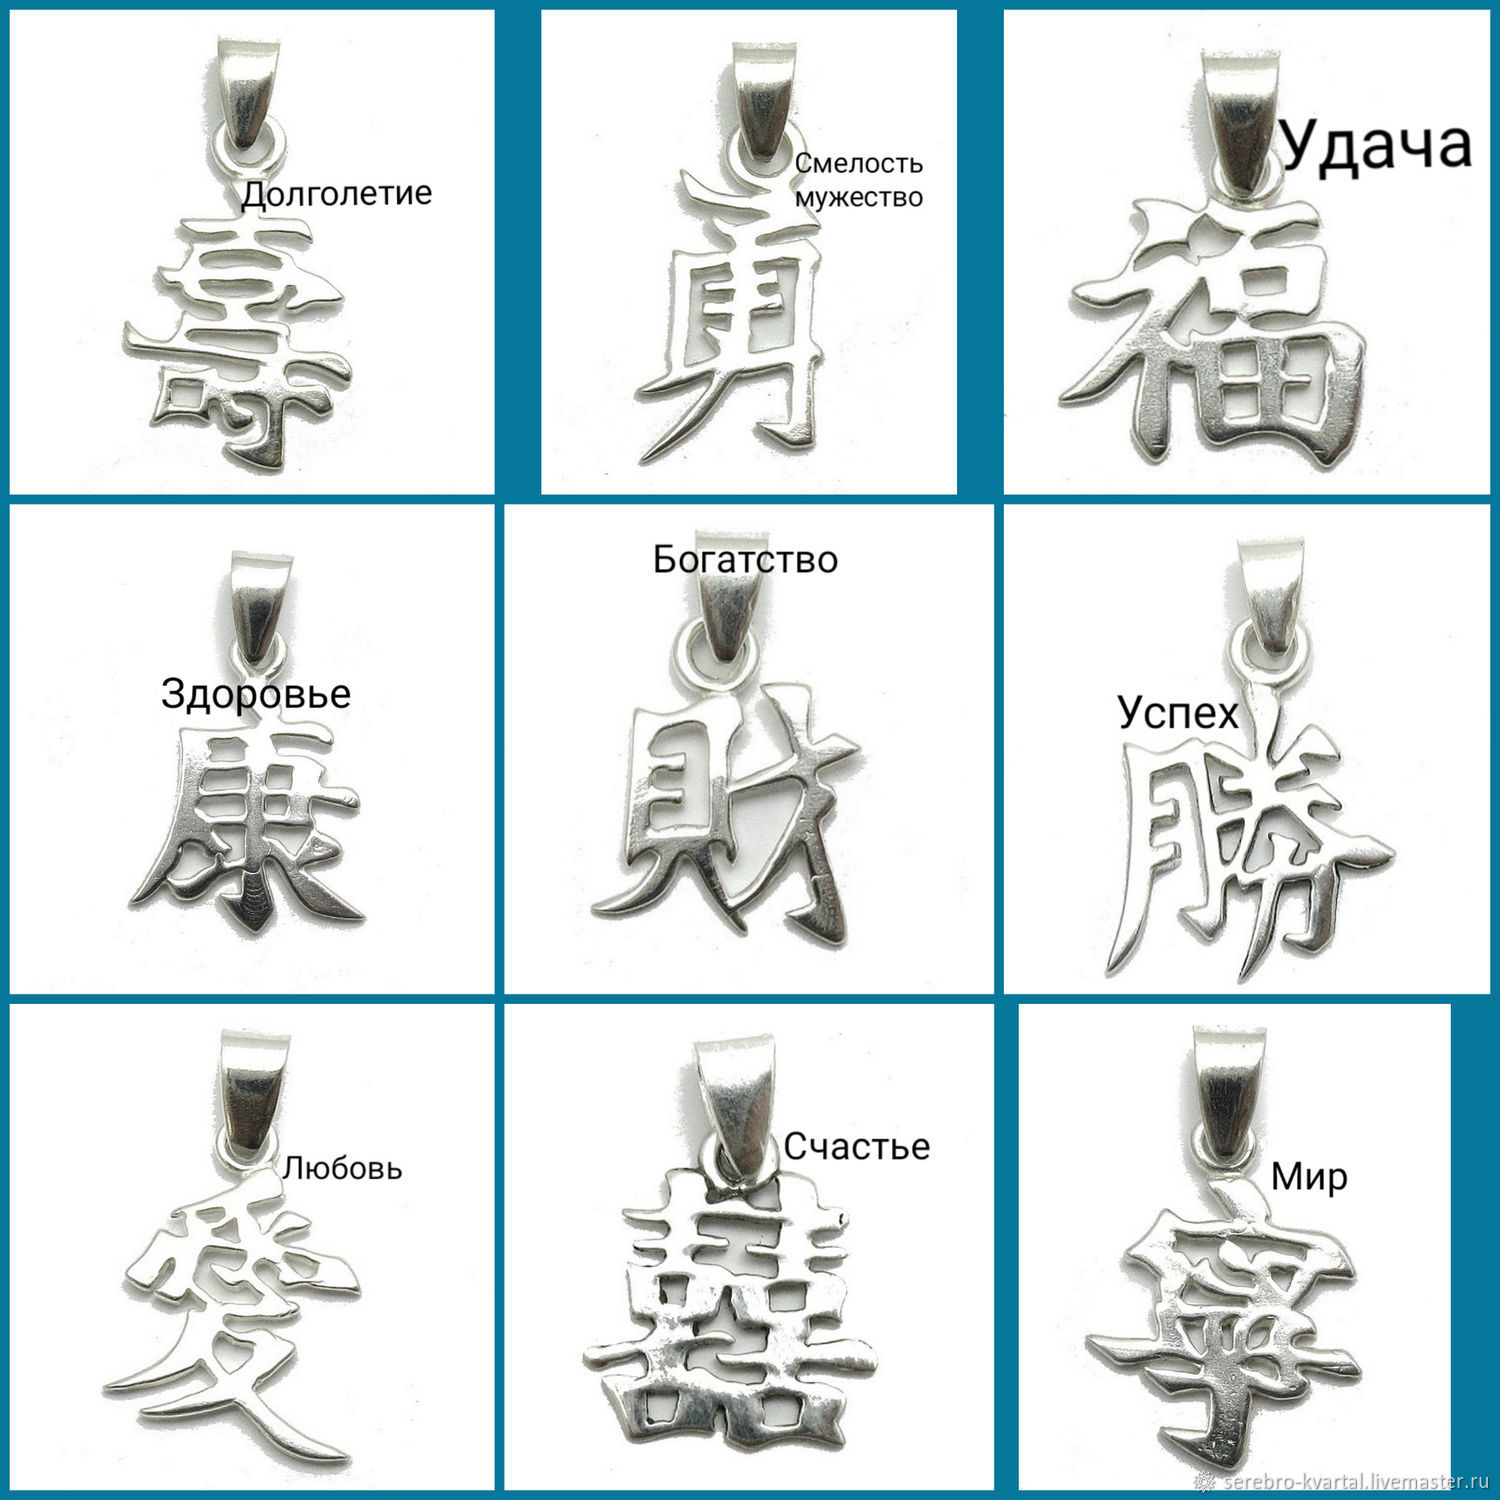 Названия китайских чаёв с иероглифами и русским переводом.